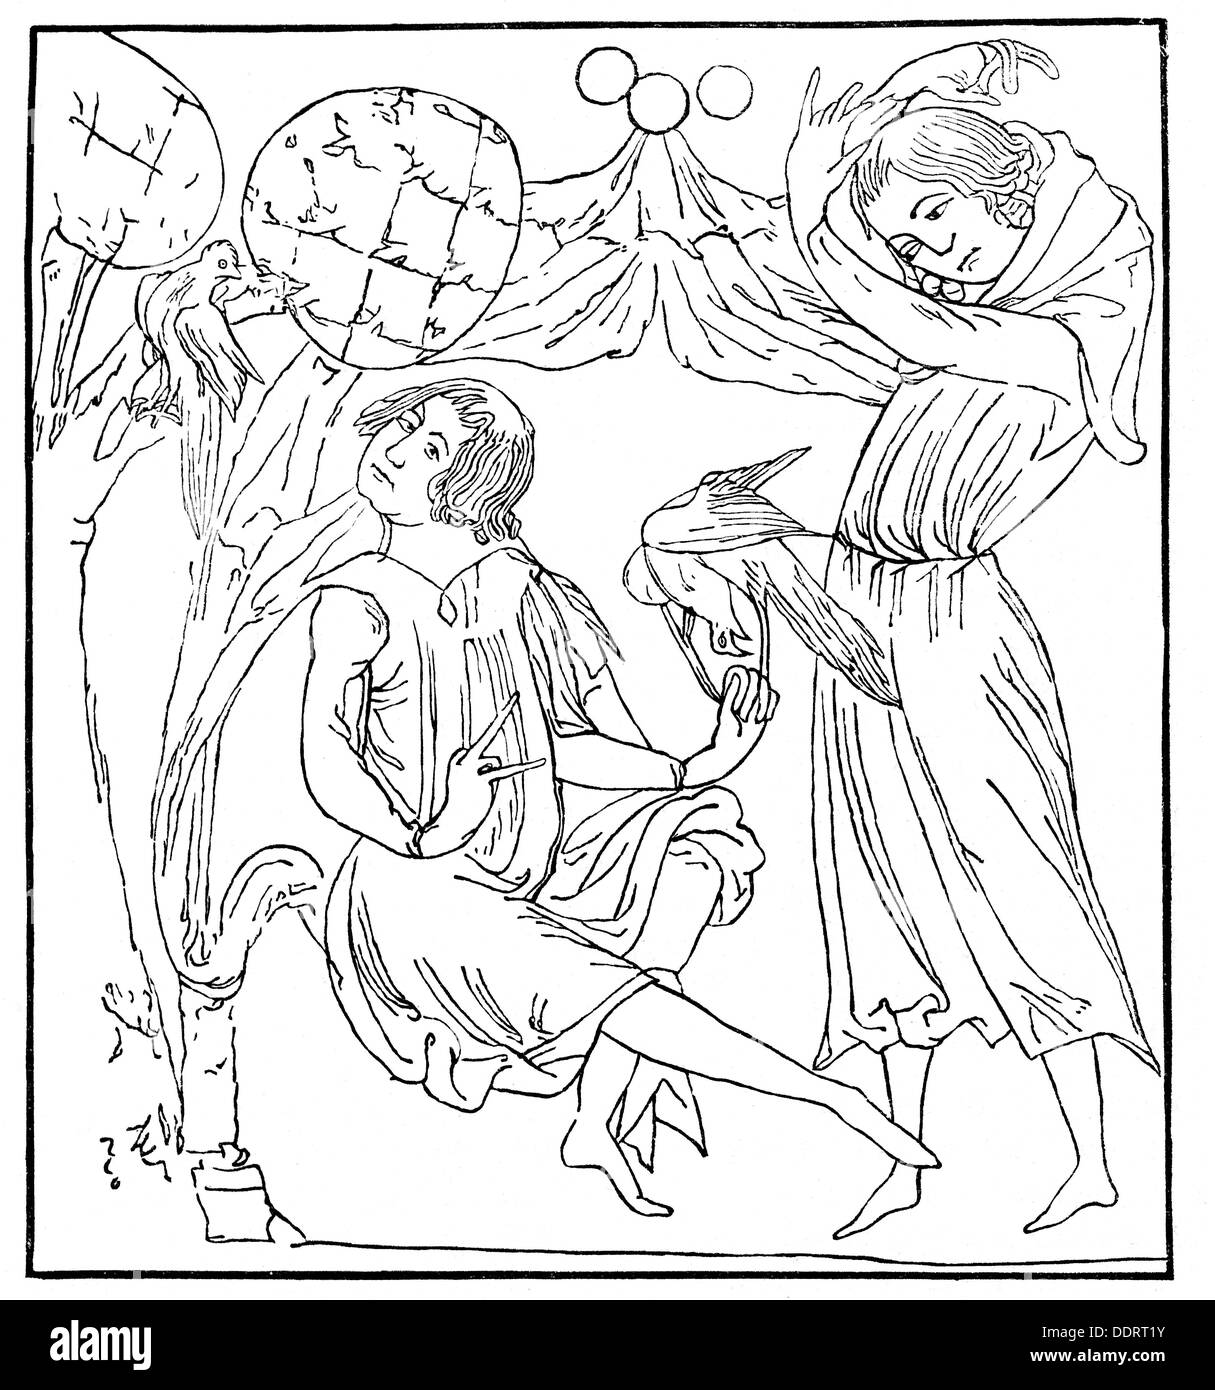 Gottfried von Strassburg, + circa 1215, autore/scrittore tedesco, oevre, 'Tristan', sua madre Riwalin legami d'amore, dopo la miniatura del manoscritto di Monaco, incisione in legno, 19th secolo, Foto Stock